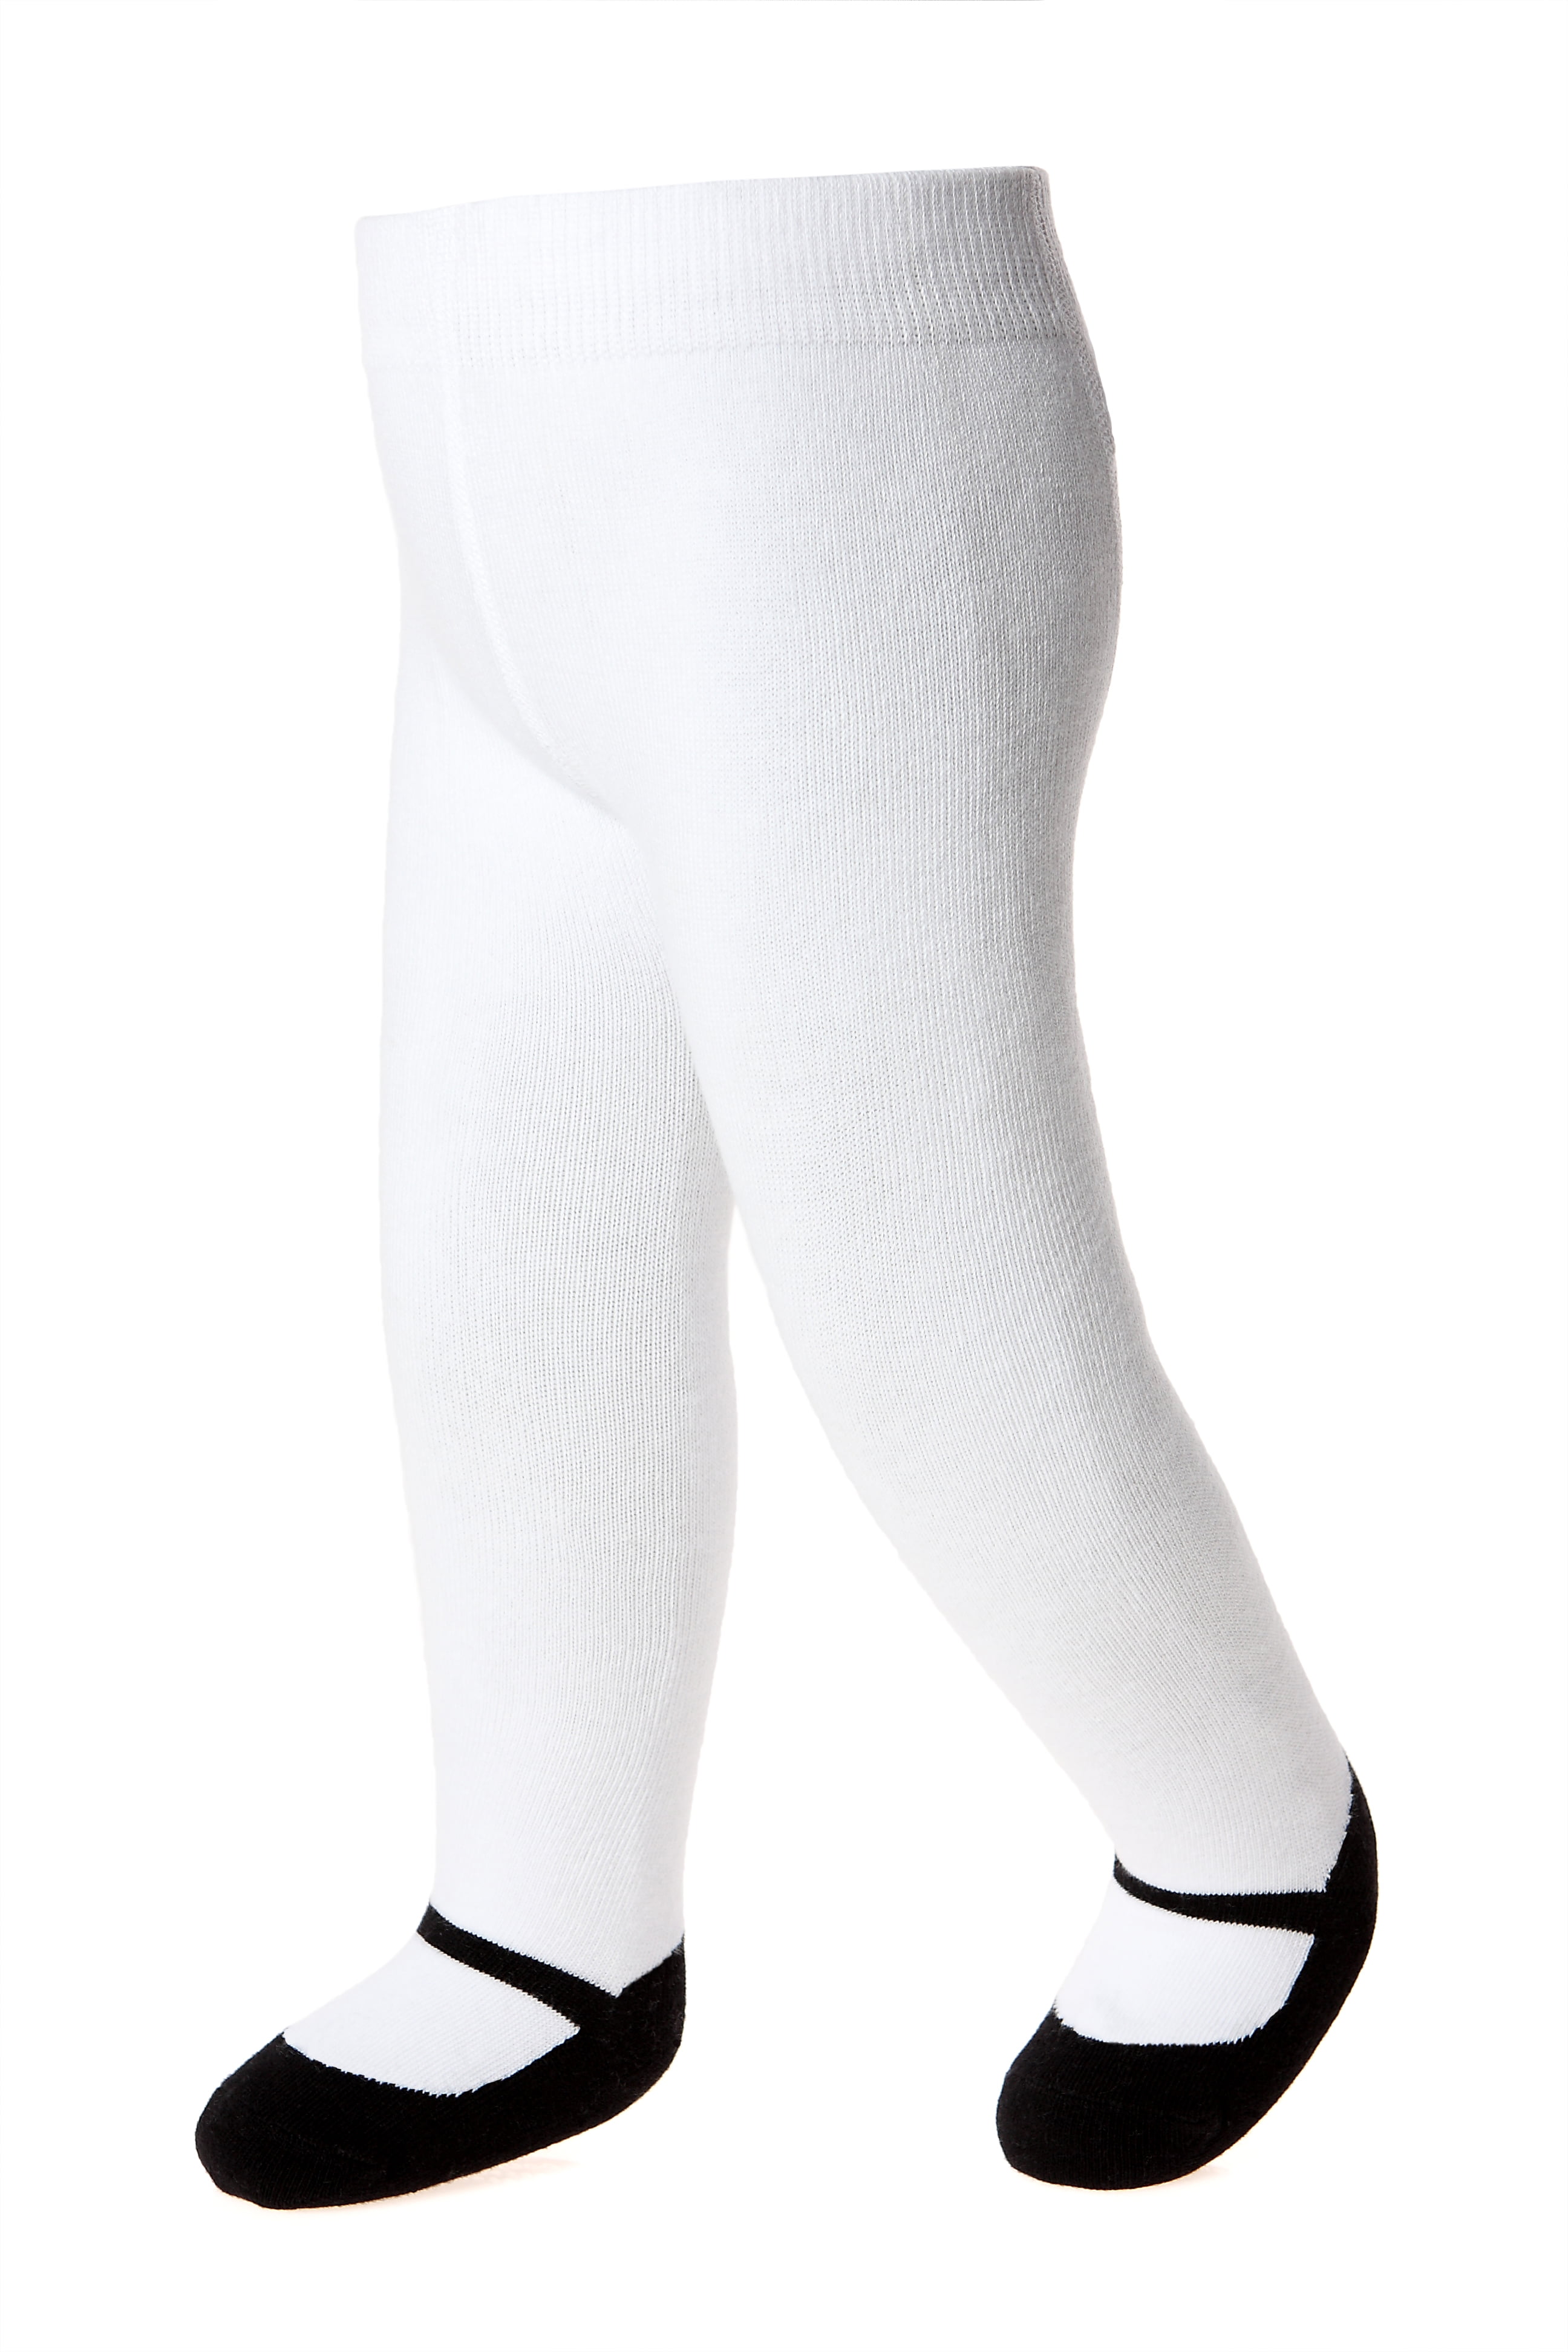 Black & White Short Leggings - BBB430001 – BU Baby